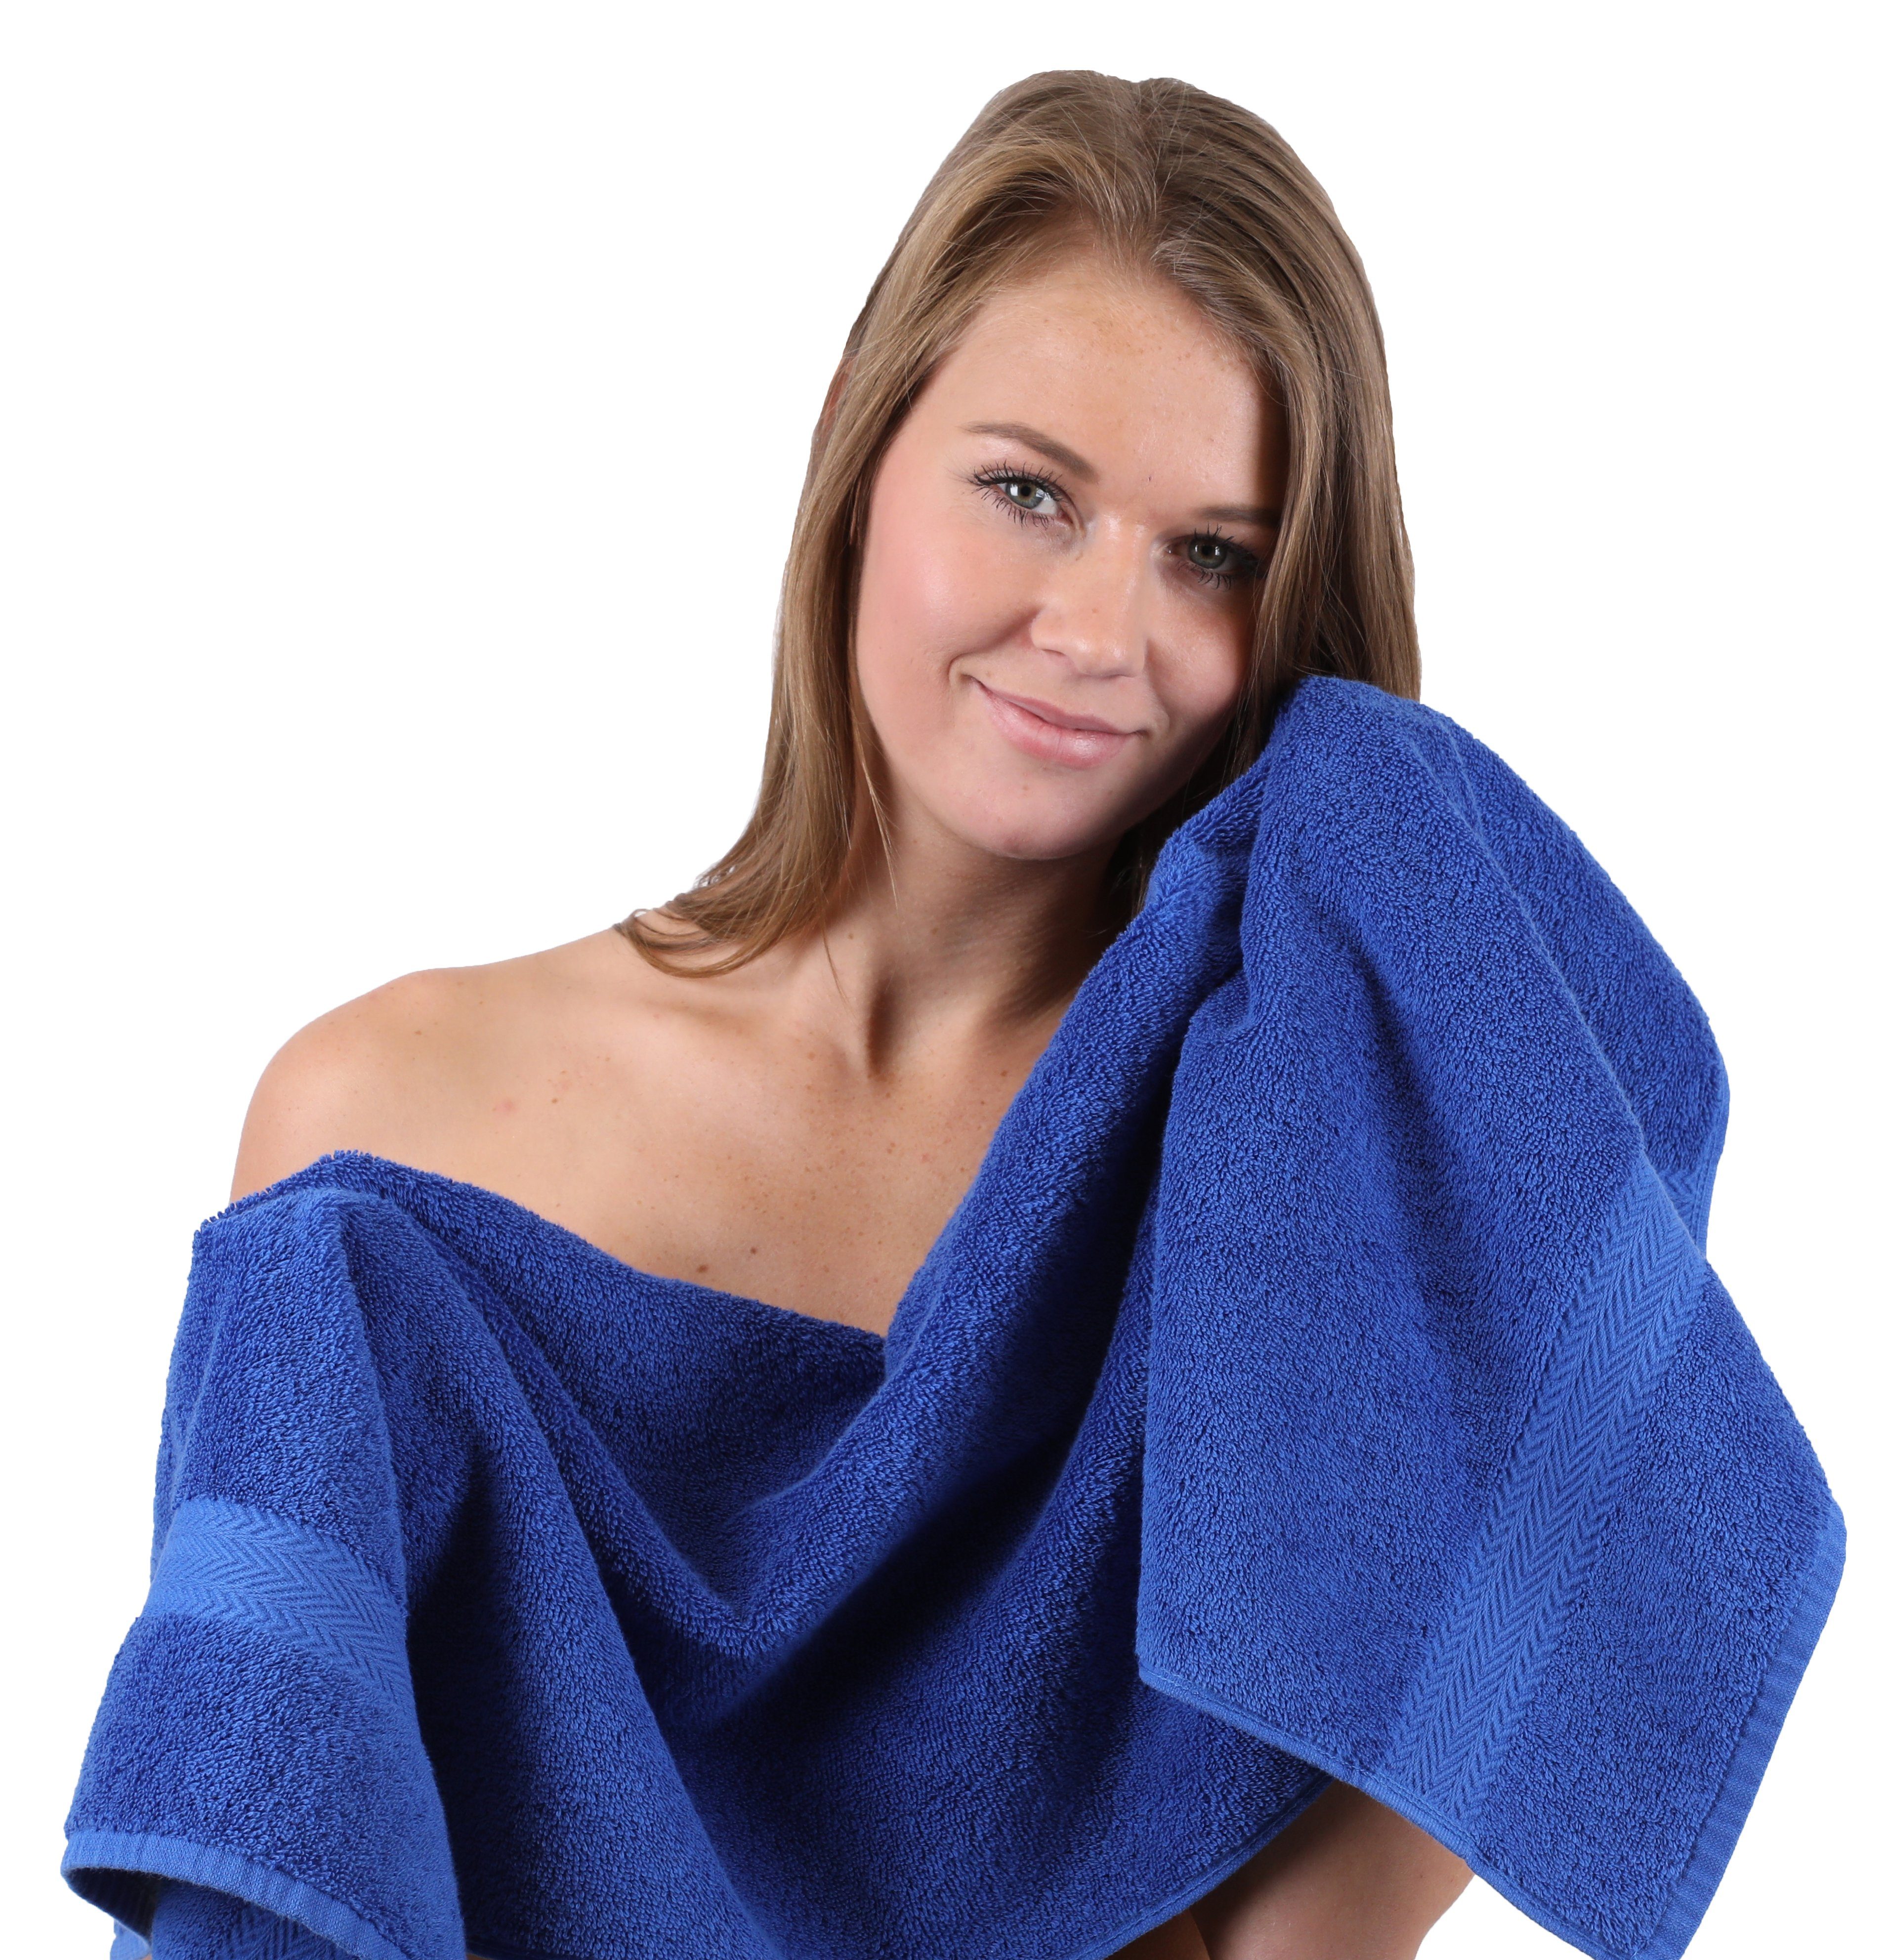 Handtuch Baumwolle, Farbe Waschhandschuhe (10-tlg) Dunkel 100% & Baumwolle Premium 10-TLG. Handtücher 2 4 Rot, Blau Gästetücher Set Royal Handtuch-Set Duschtücher 2 2 Betz 100%